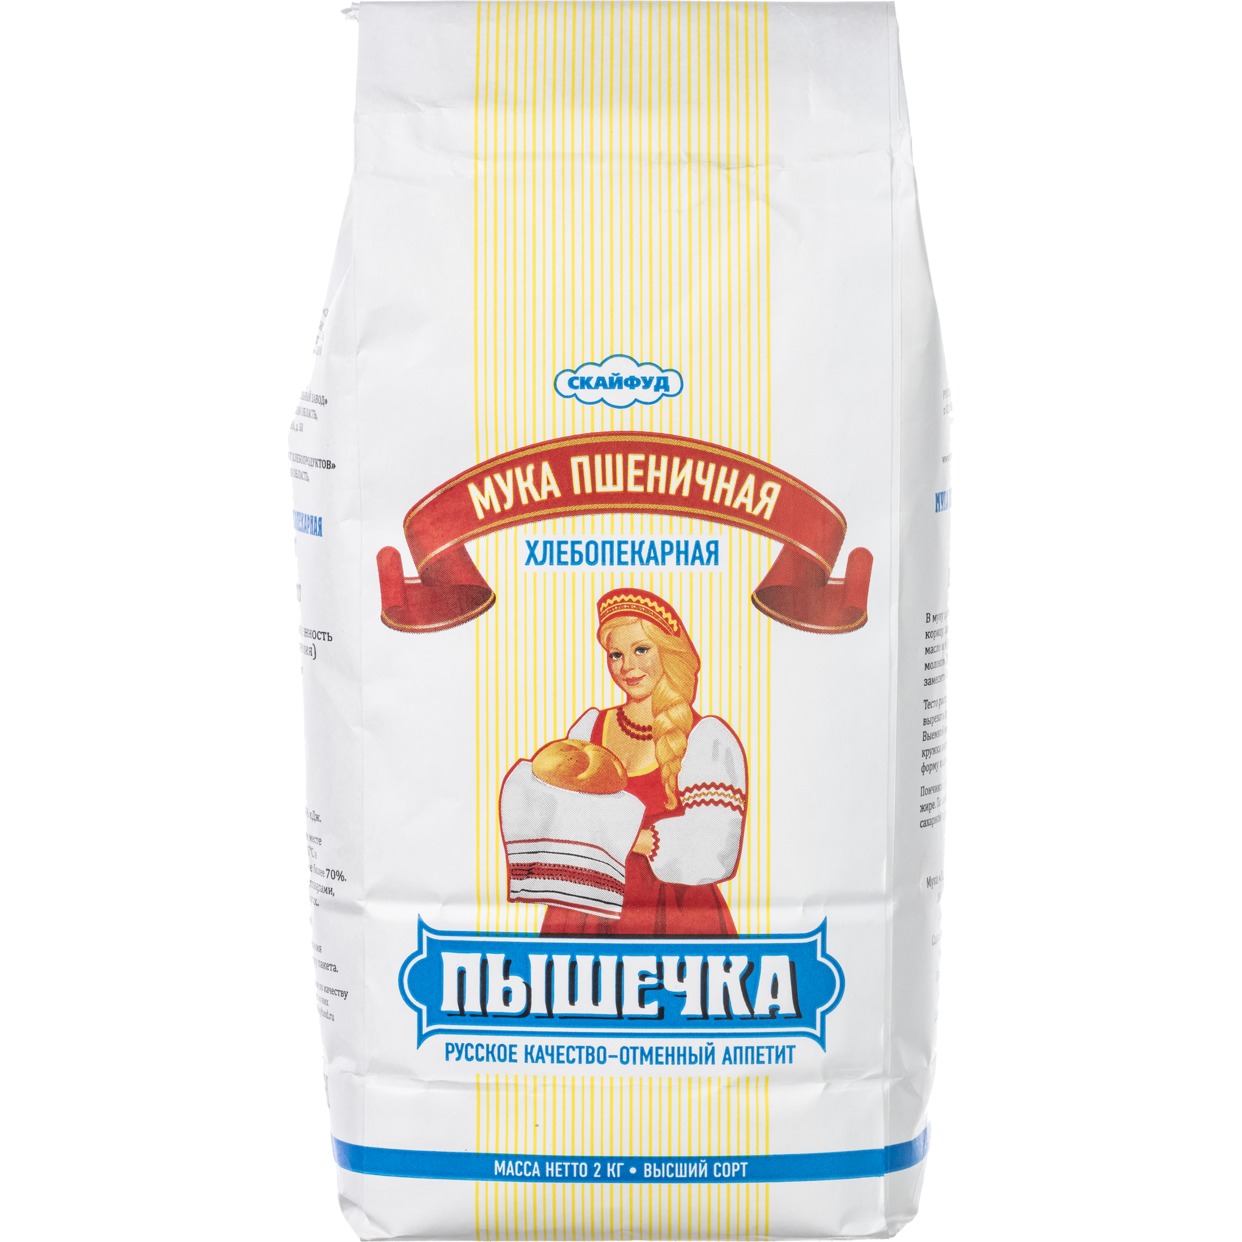 Мука Пышечка, пшеничная, хлебопекарная, высший сорт, 2 кг по акции в Пятерочке